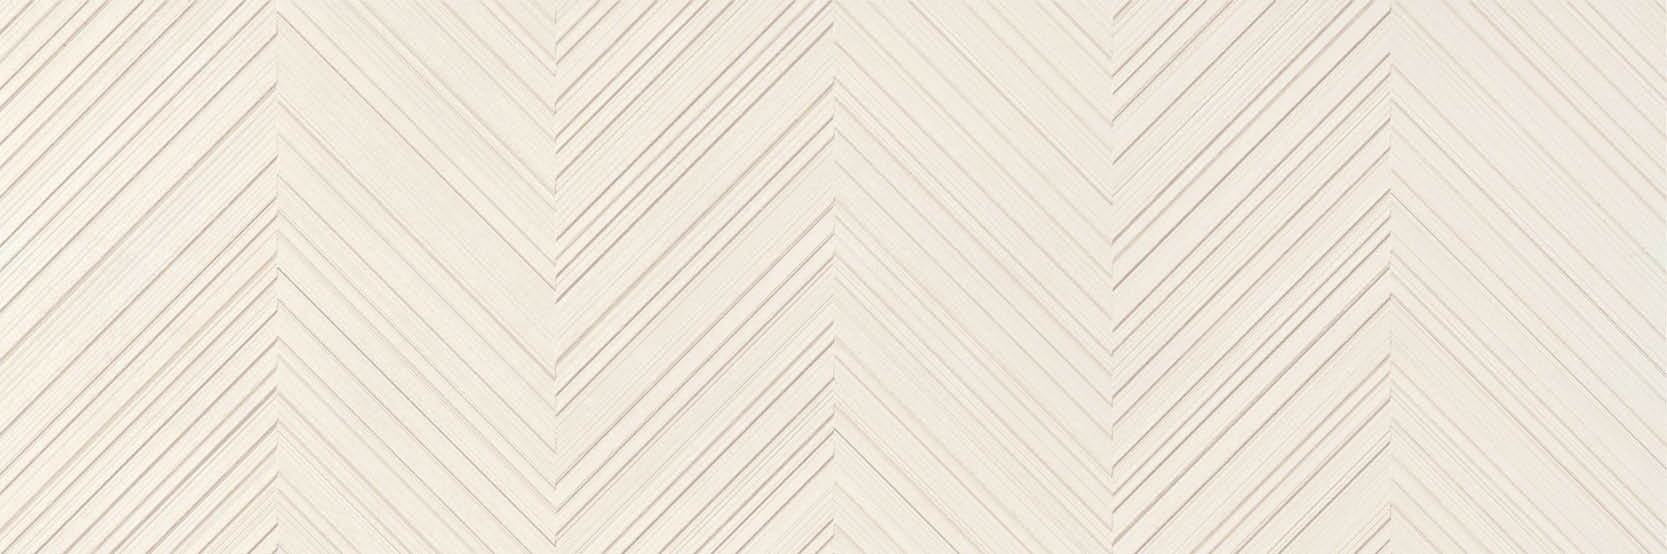 sammys-designer-flooring-tile-full-size-gubi-light-peak.jpg